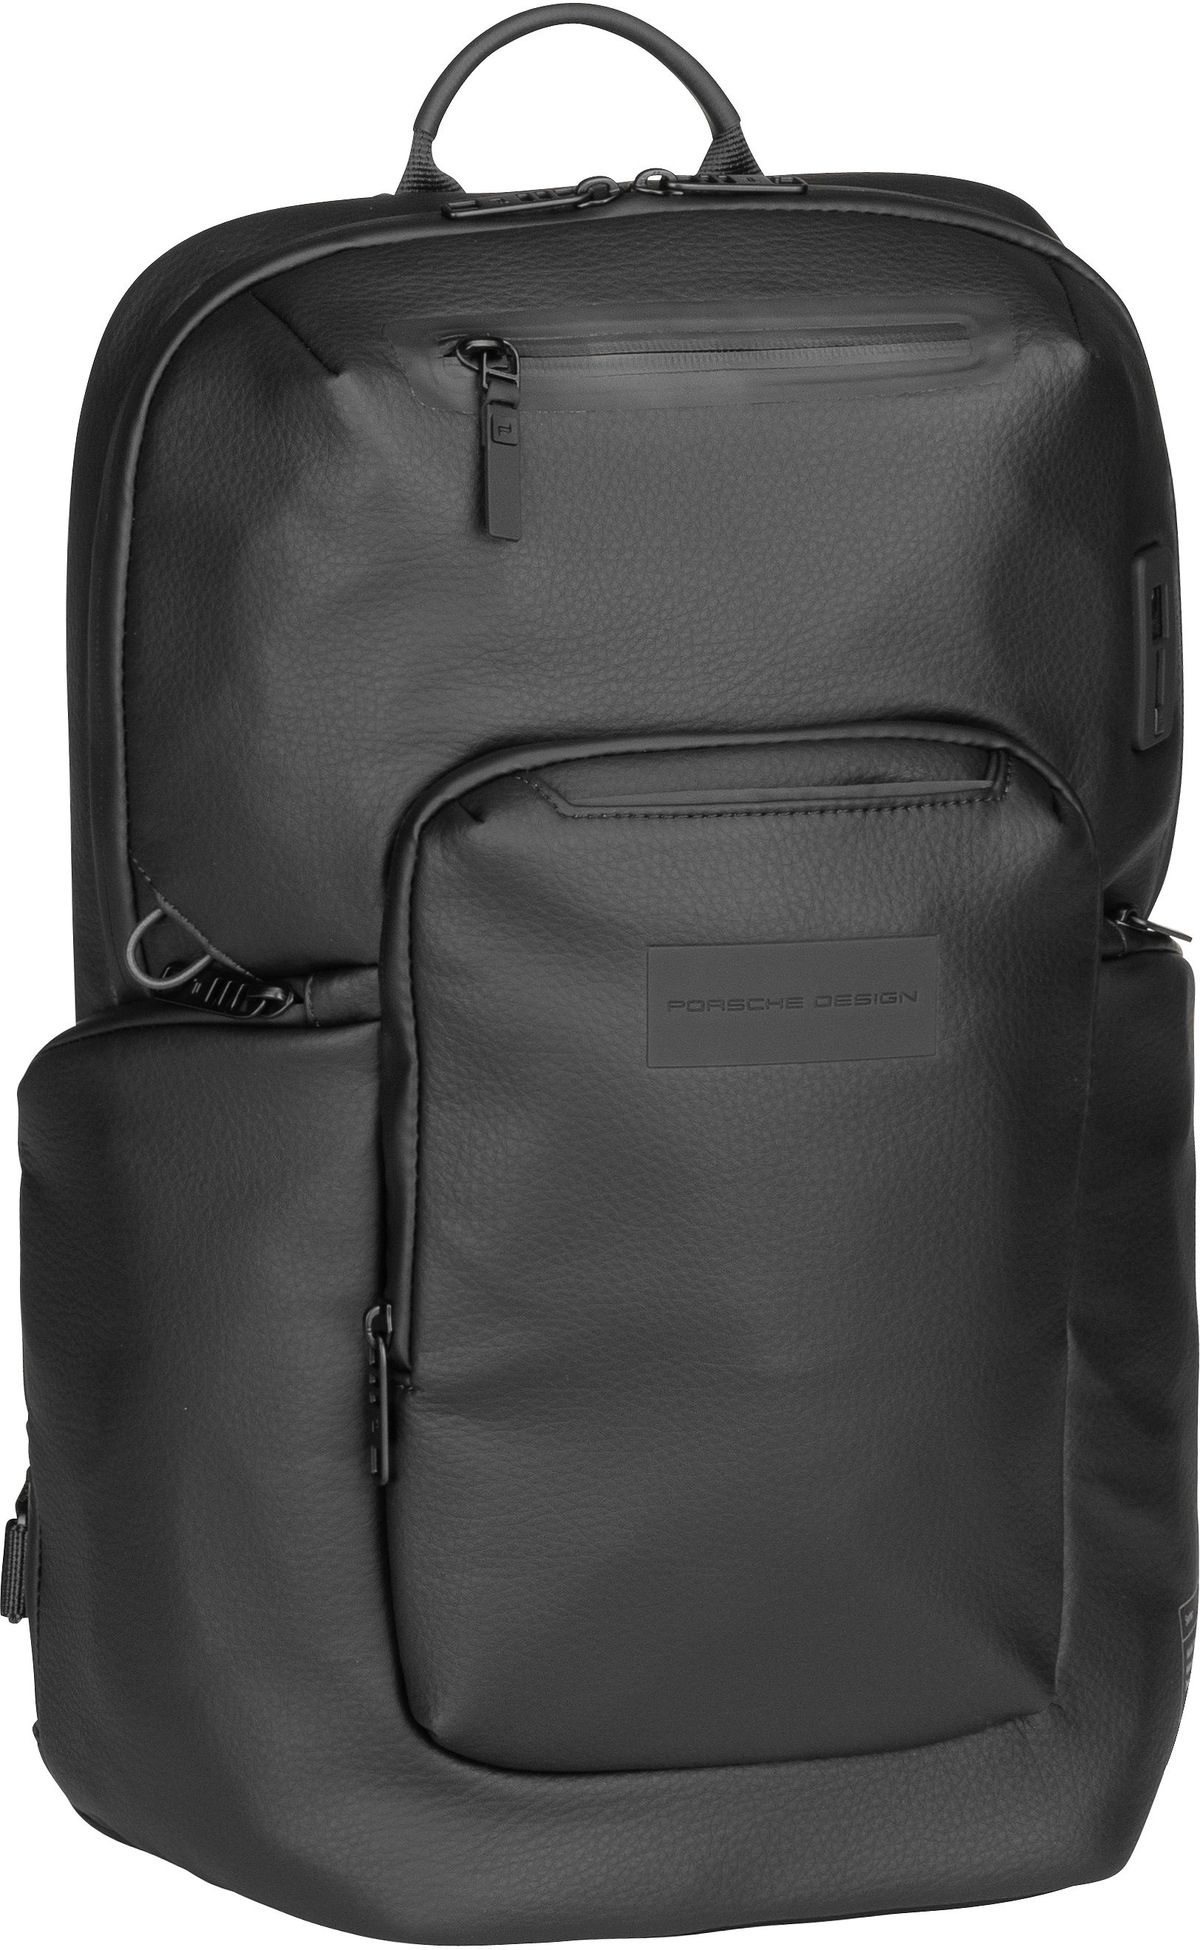 Porsche Design Urban Eco Leather Backpack S  in Black (17.8 Liter), Rucksack / Backpack